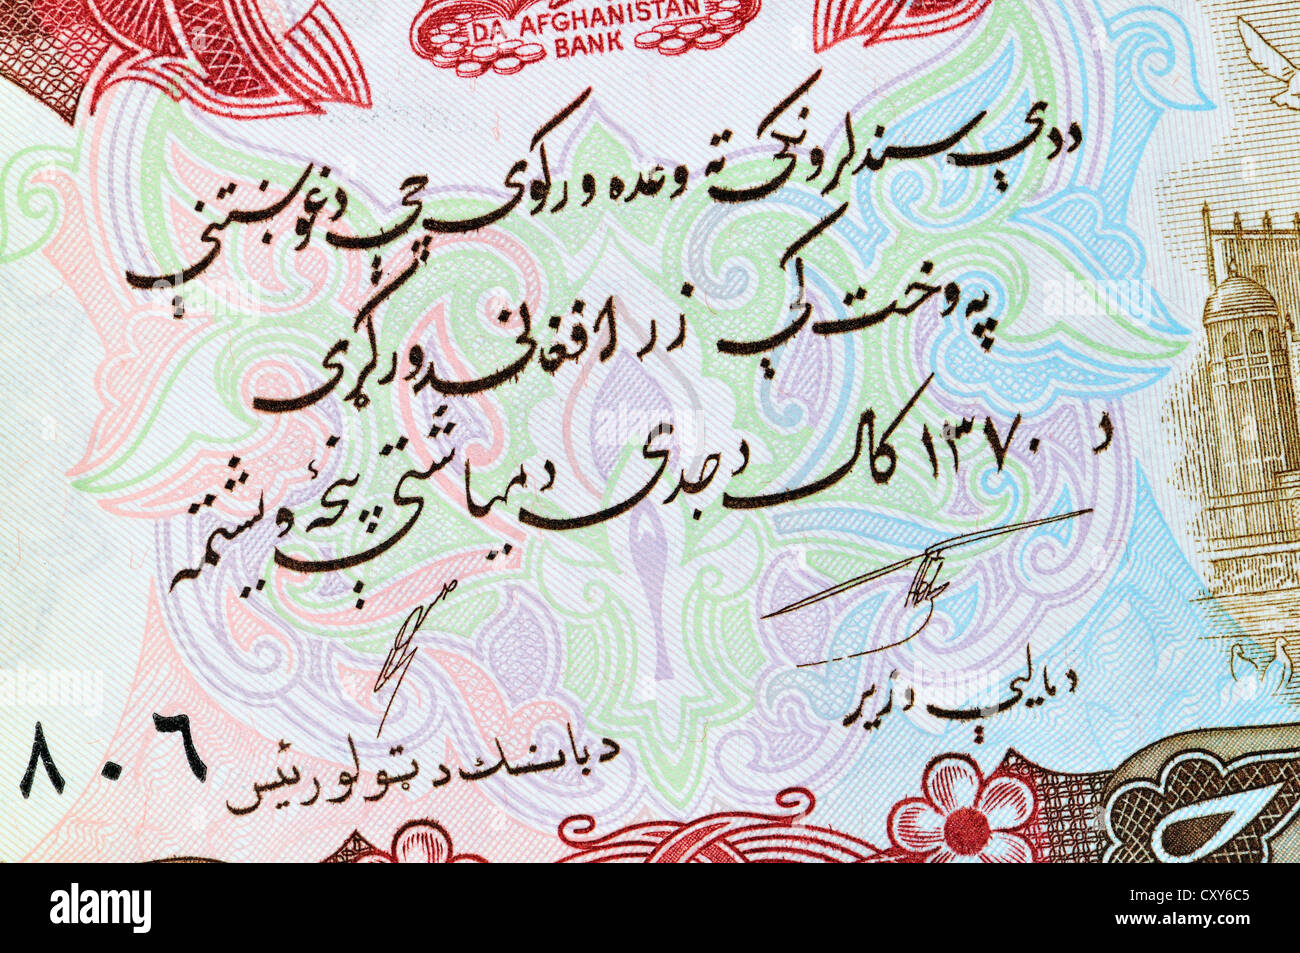 Dettaglio dell'Afghanistan 1000 afgani banconota - scrittura araba Foto Stock